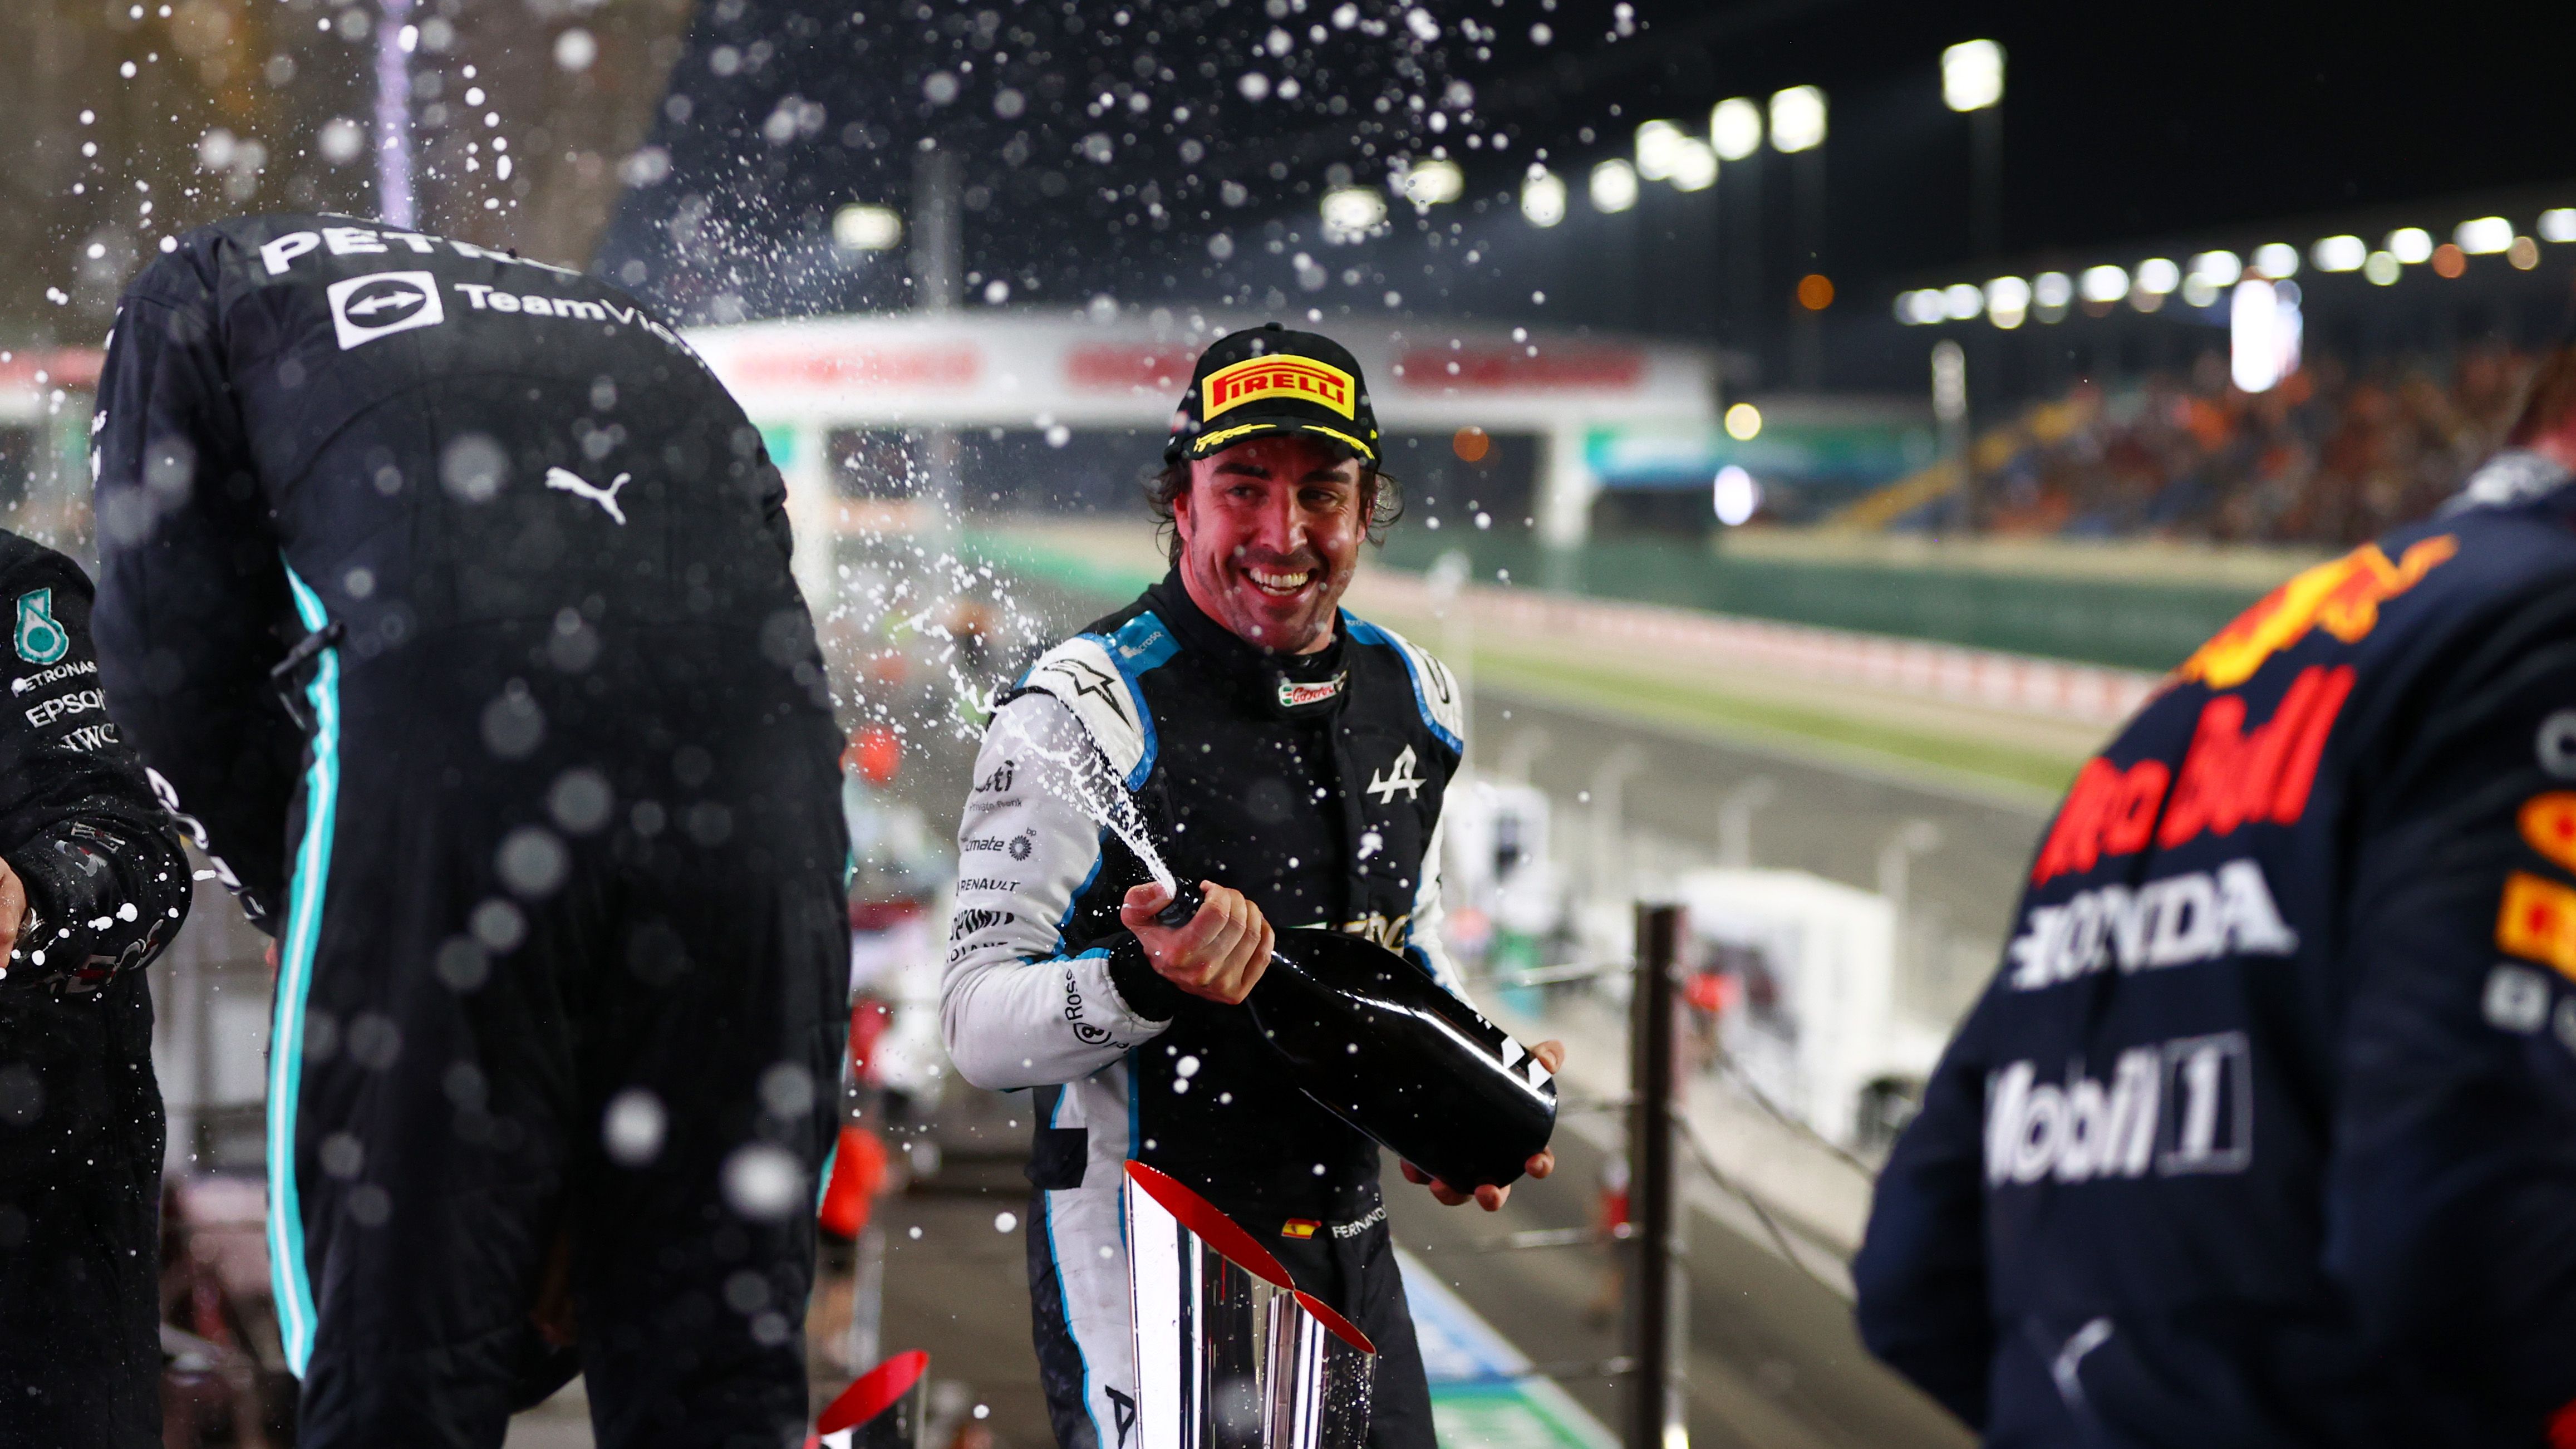 Alonso: En Fórmula 1 tuve el mejor coche quizás tres veces